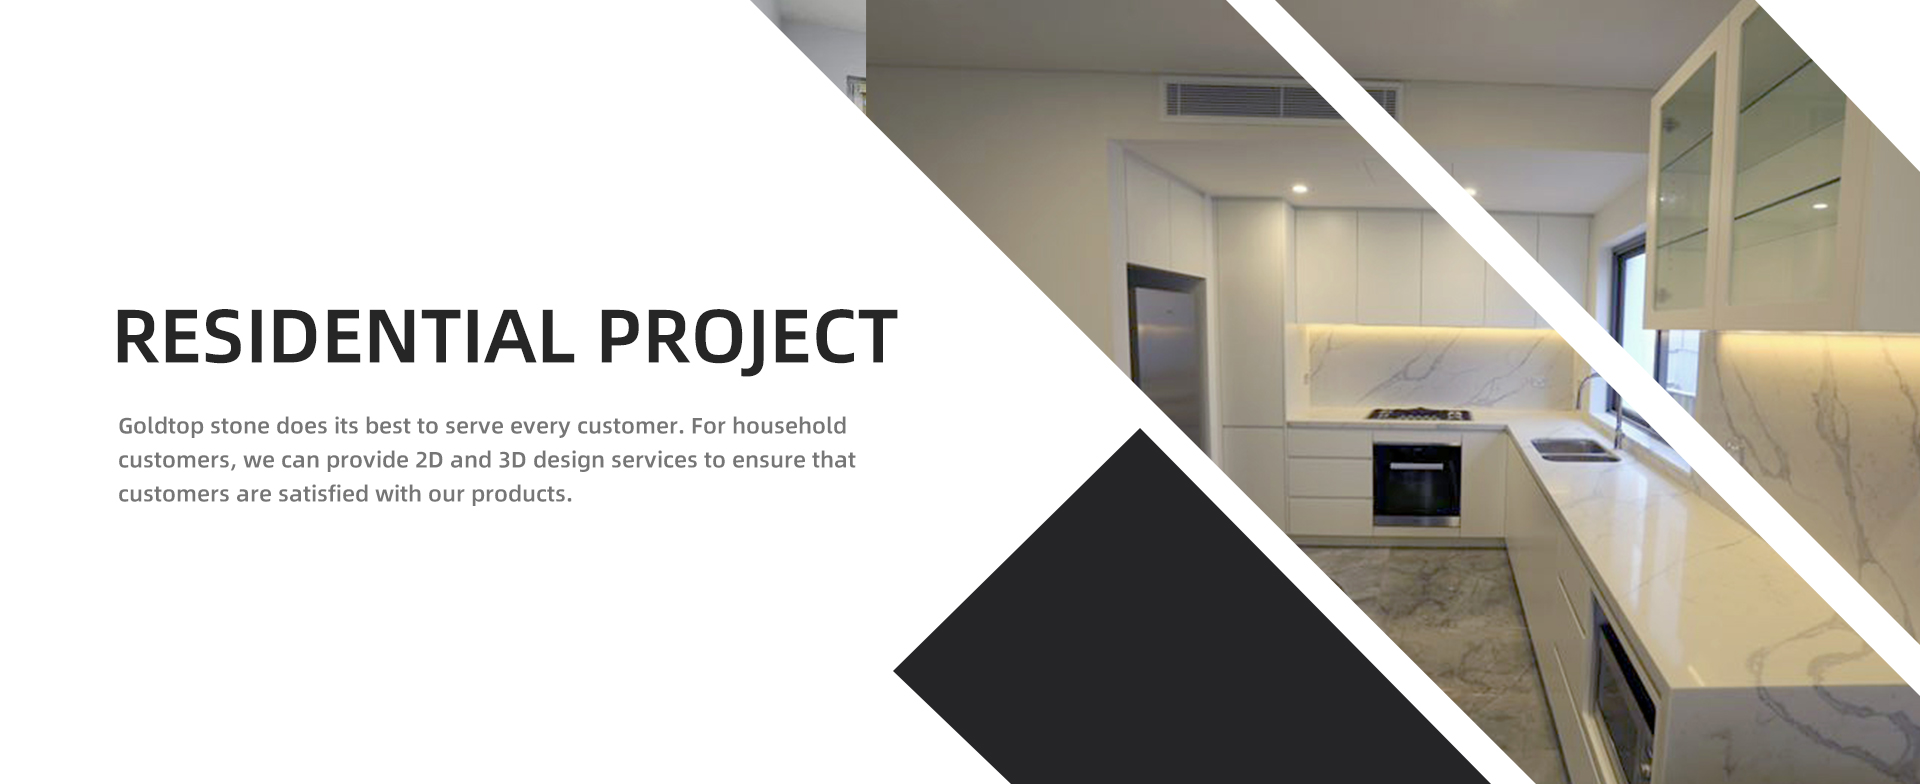 Житловий проект Goldtop stone робить все можливе, щоб обслуговувати кожного клієнта. Для побутових клієнтів ми можемо надати послуги 2D та 3D-дизайну, щоб гарантувати, що клієнти задоволені нашою продукцією.